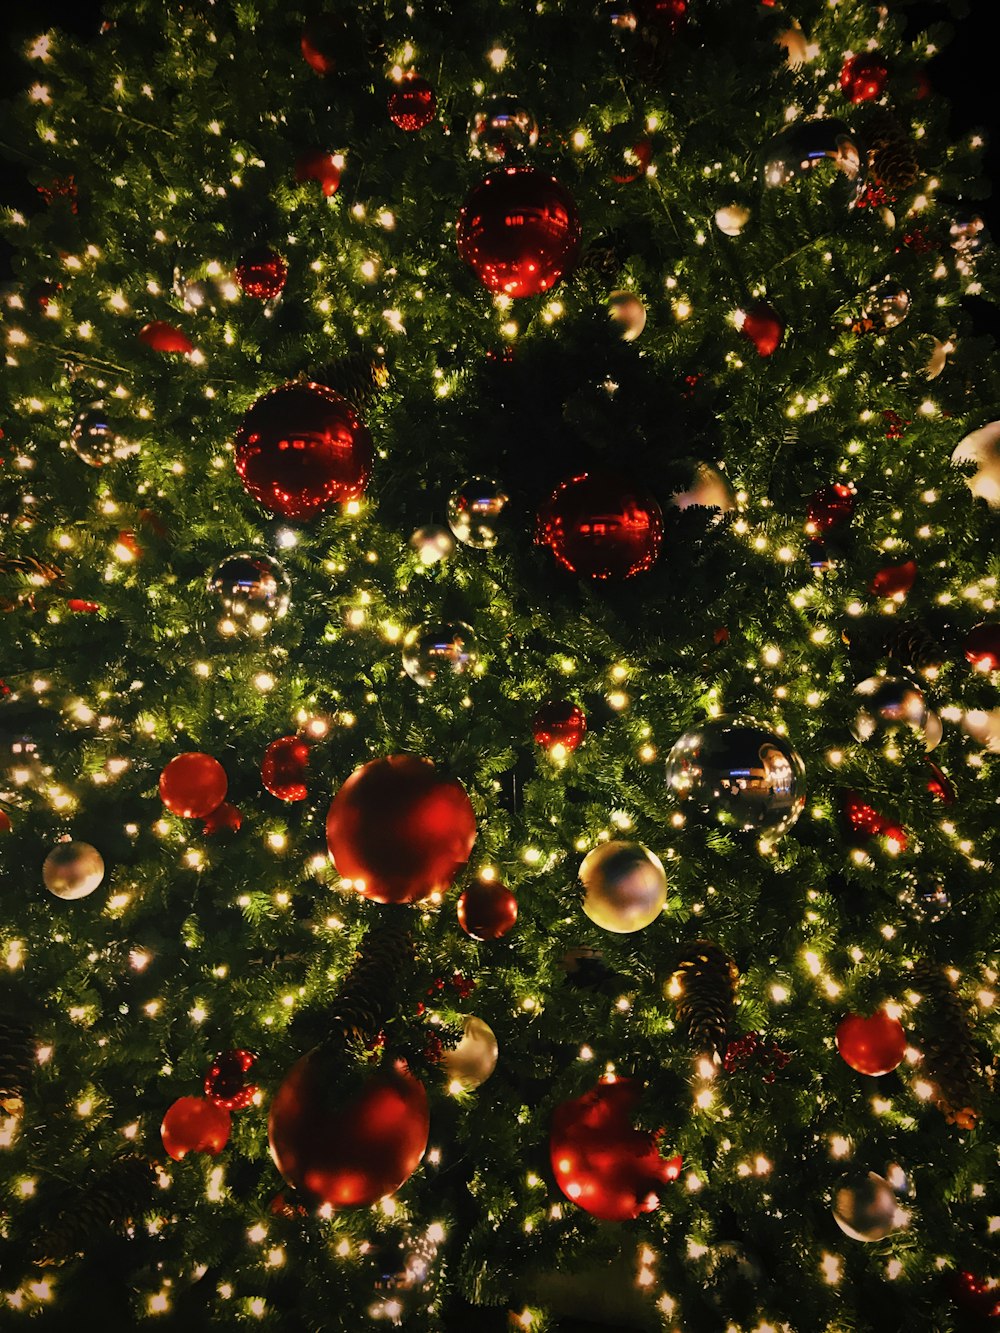 ver fotografía del árbol de Navidad con adornos y guirnaldas de luces encendidas